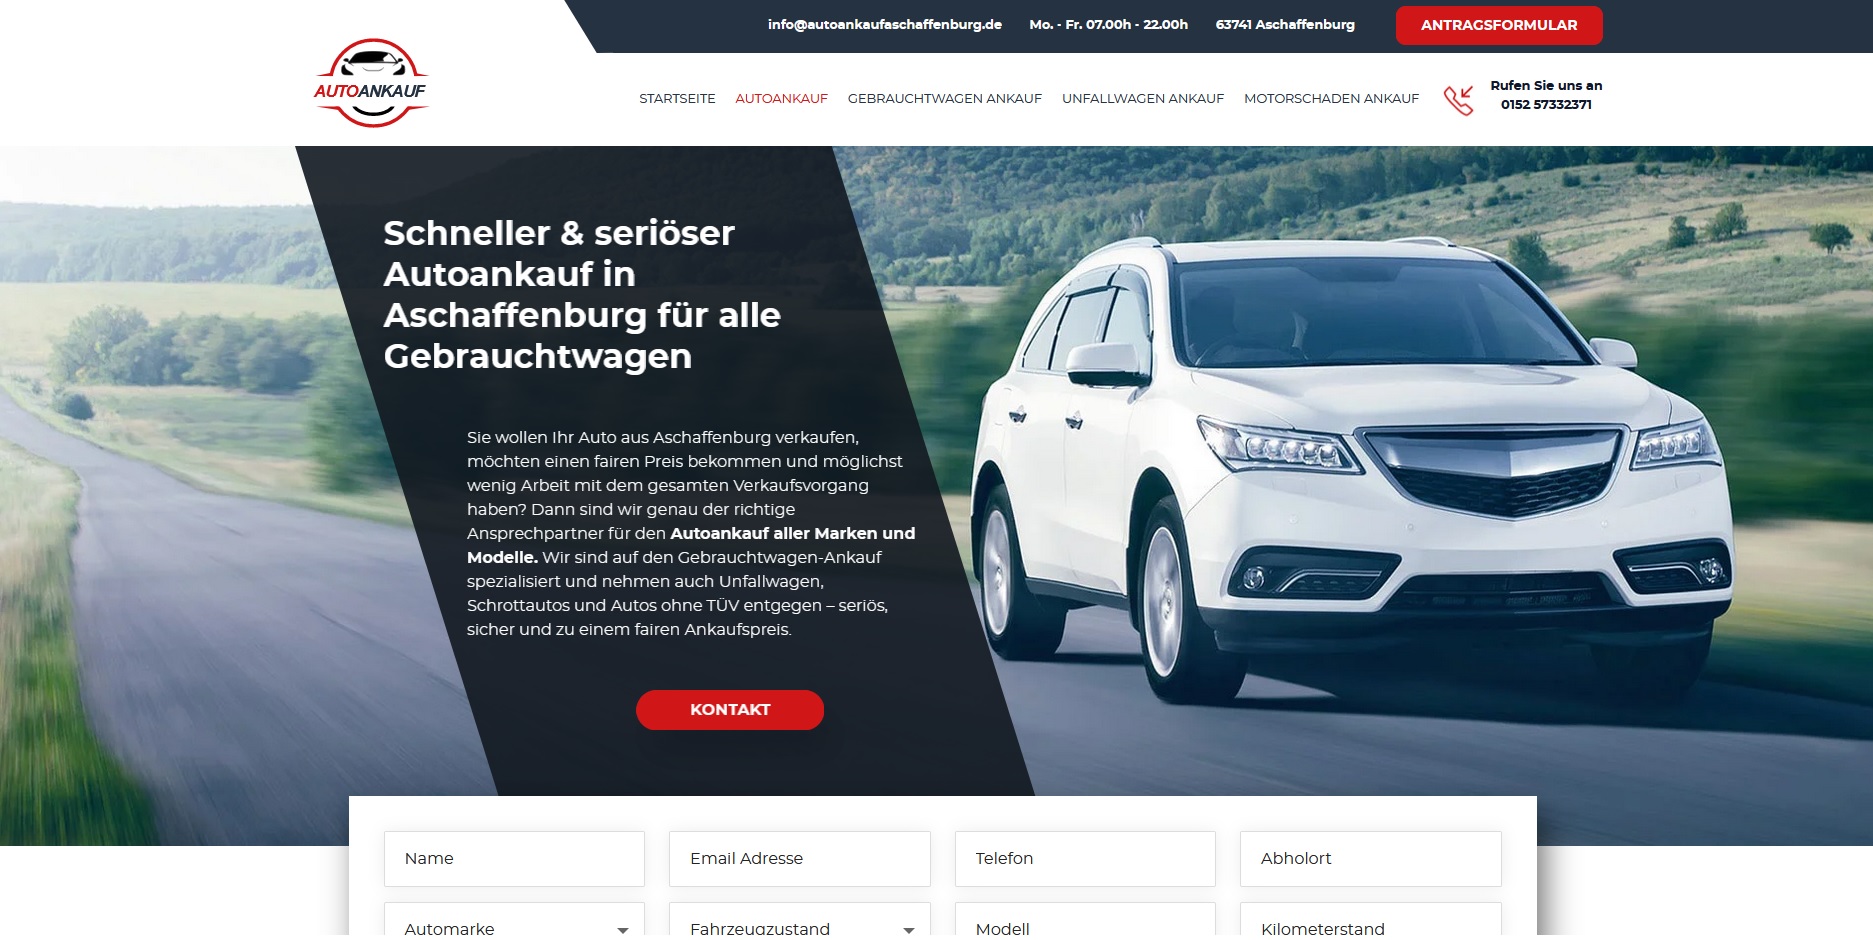 Schneller & seriöser Autoankauf in Aschaffenburg für alle Gebrauchtwagen